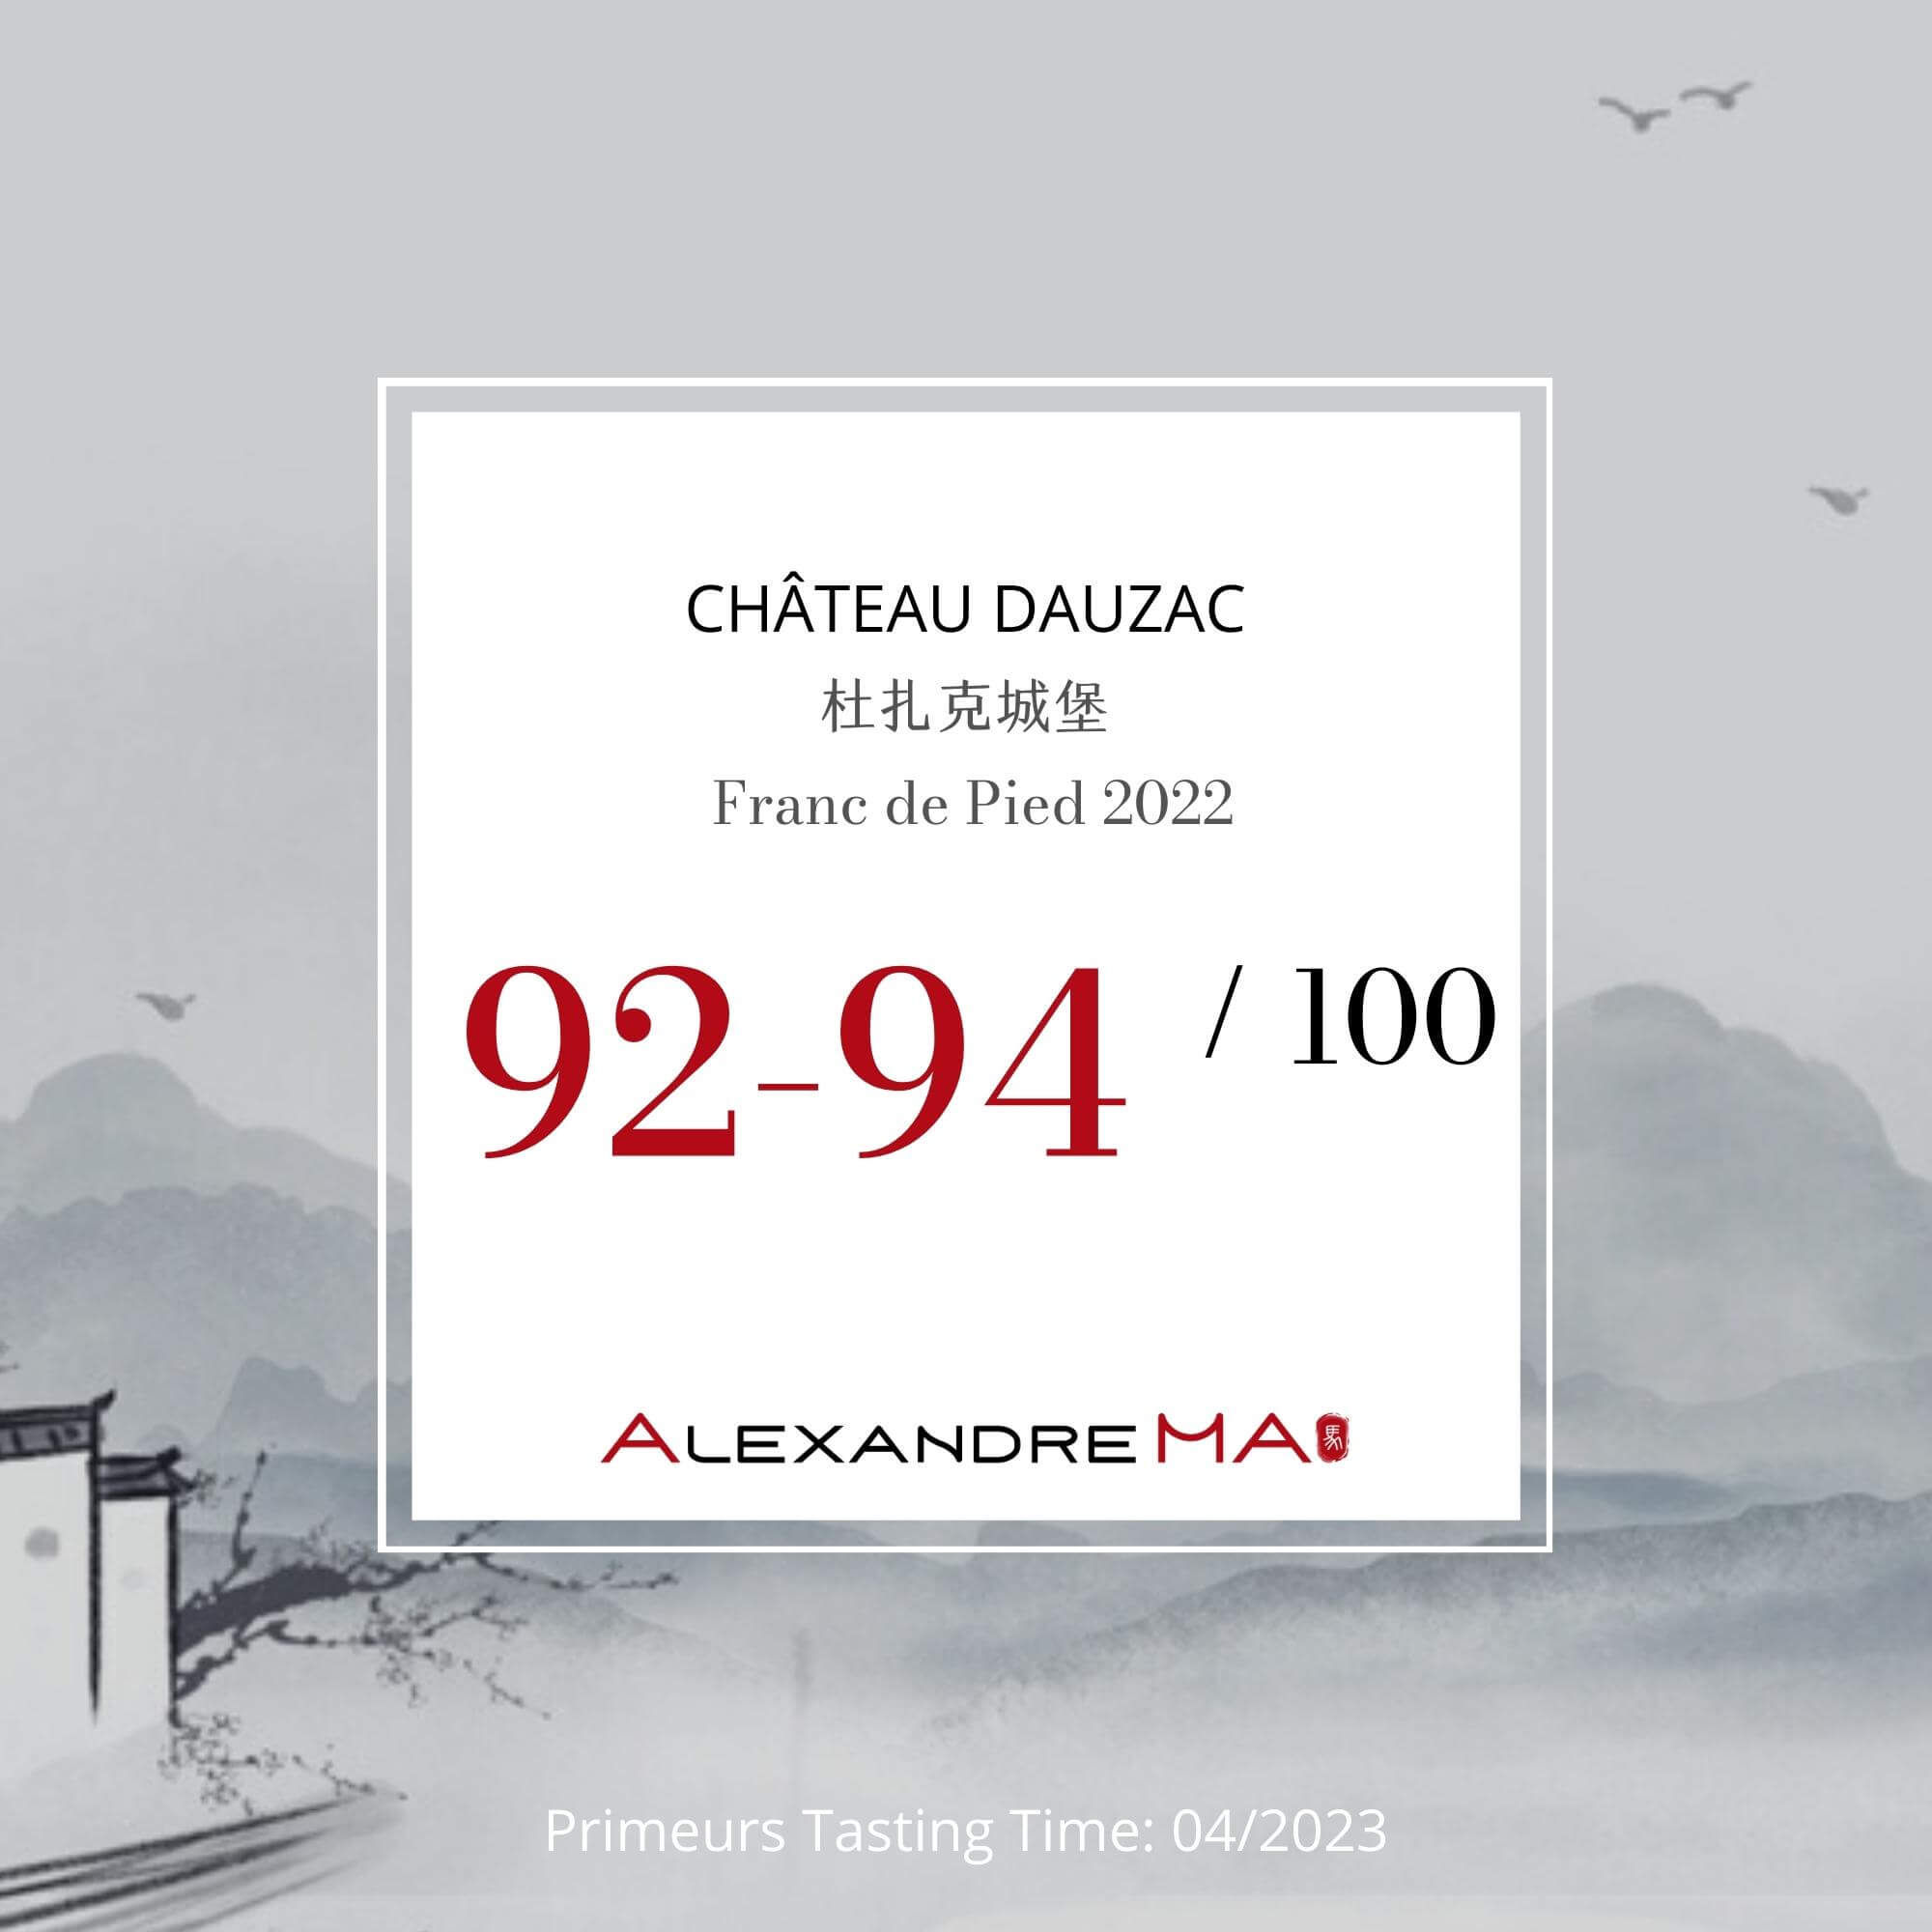 Château Dauzac 杜扎克城堡 Franc de Pied 2022 Primeurs - Alexandre Ma